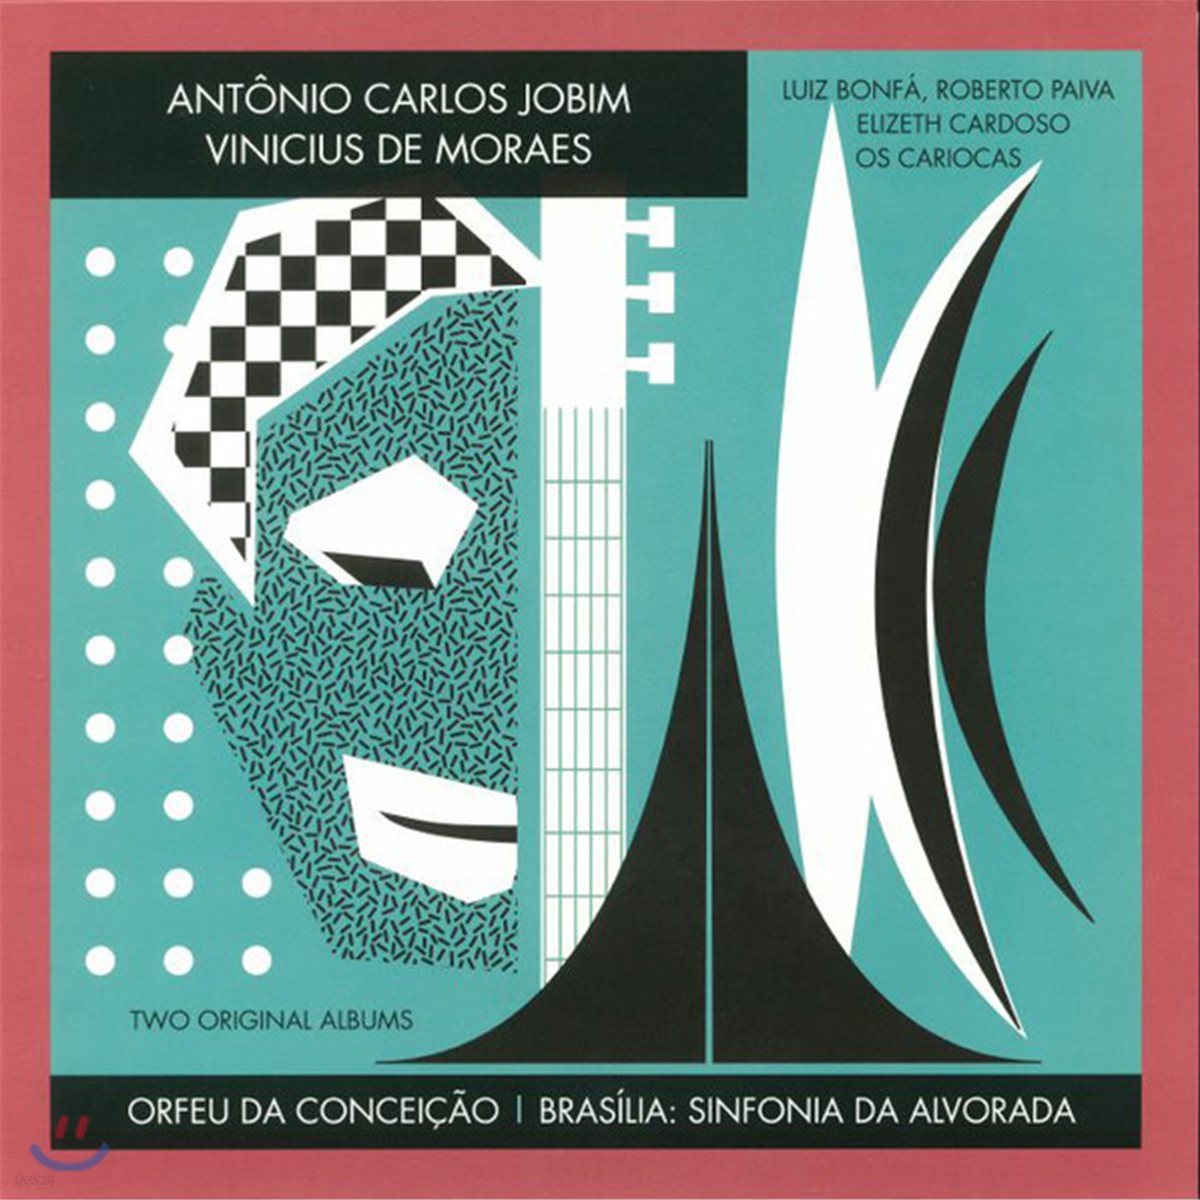 Antonio Carlos Jobim - Orfeu Da Conceicao / Brasilia: Sinfonia Da Alvorada 안토니오 카를로스 조빔 첫 앨범 [LP]